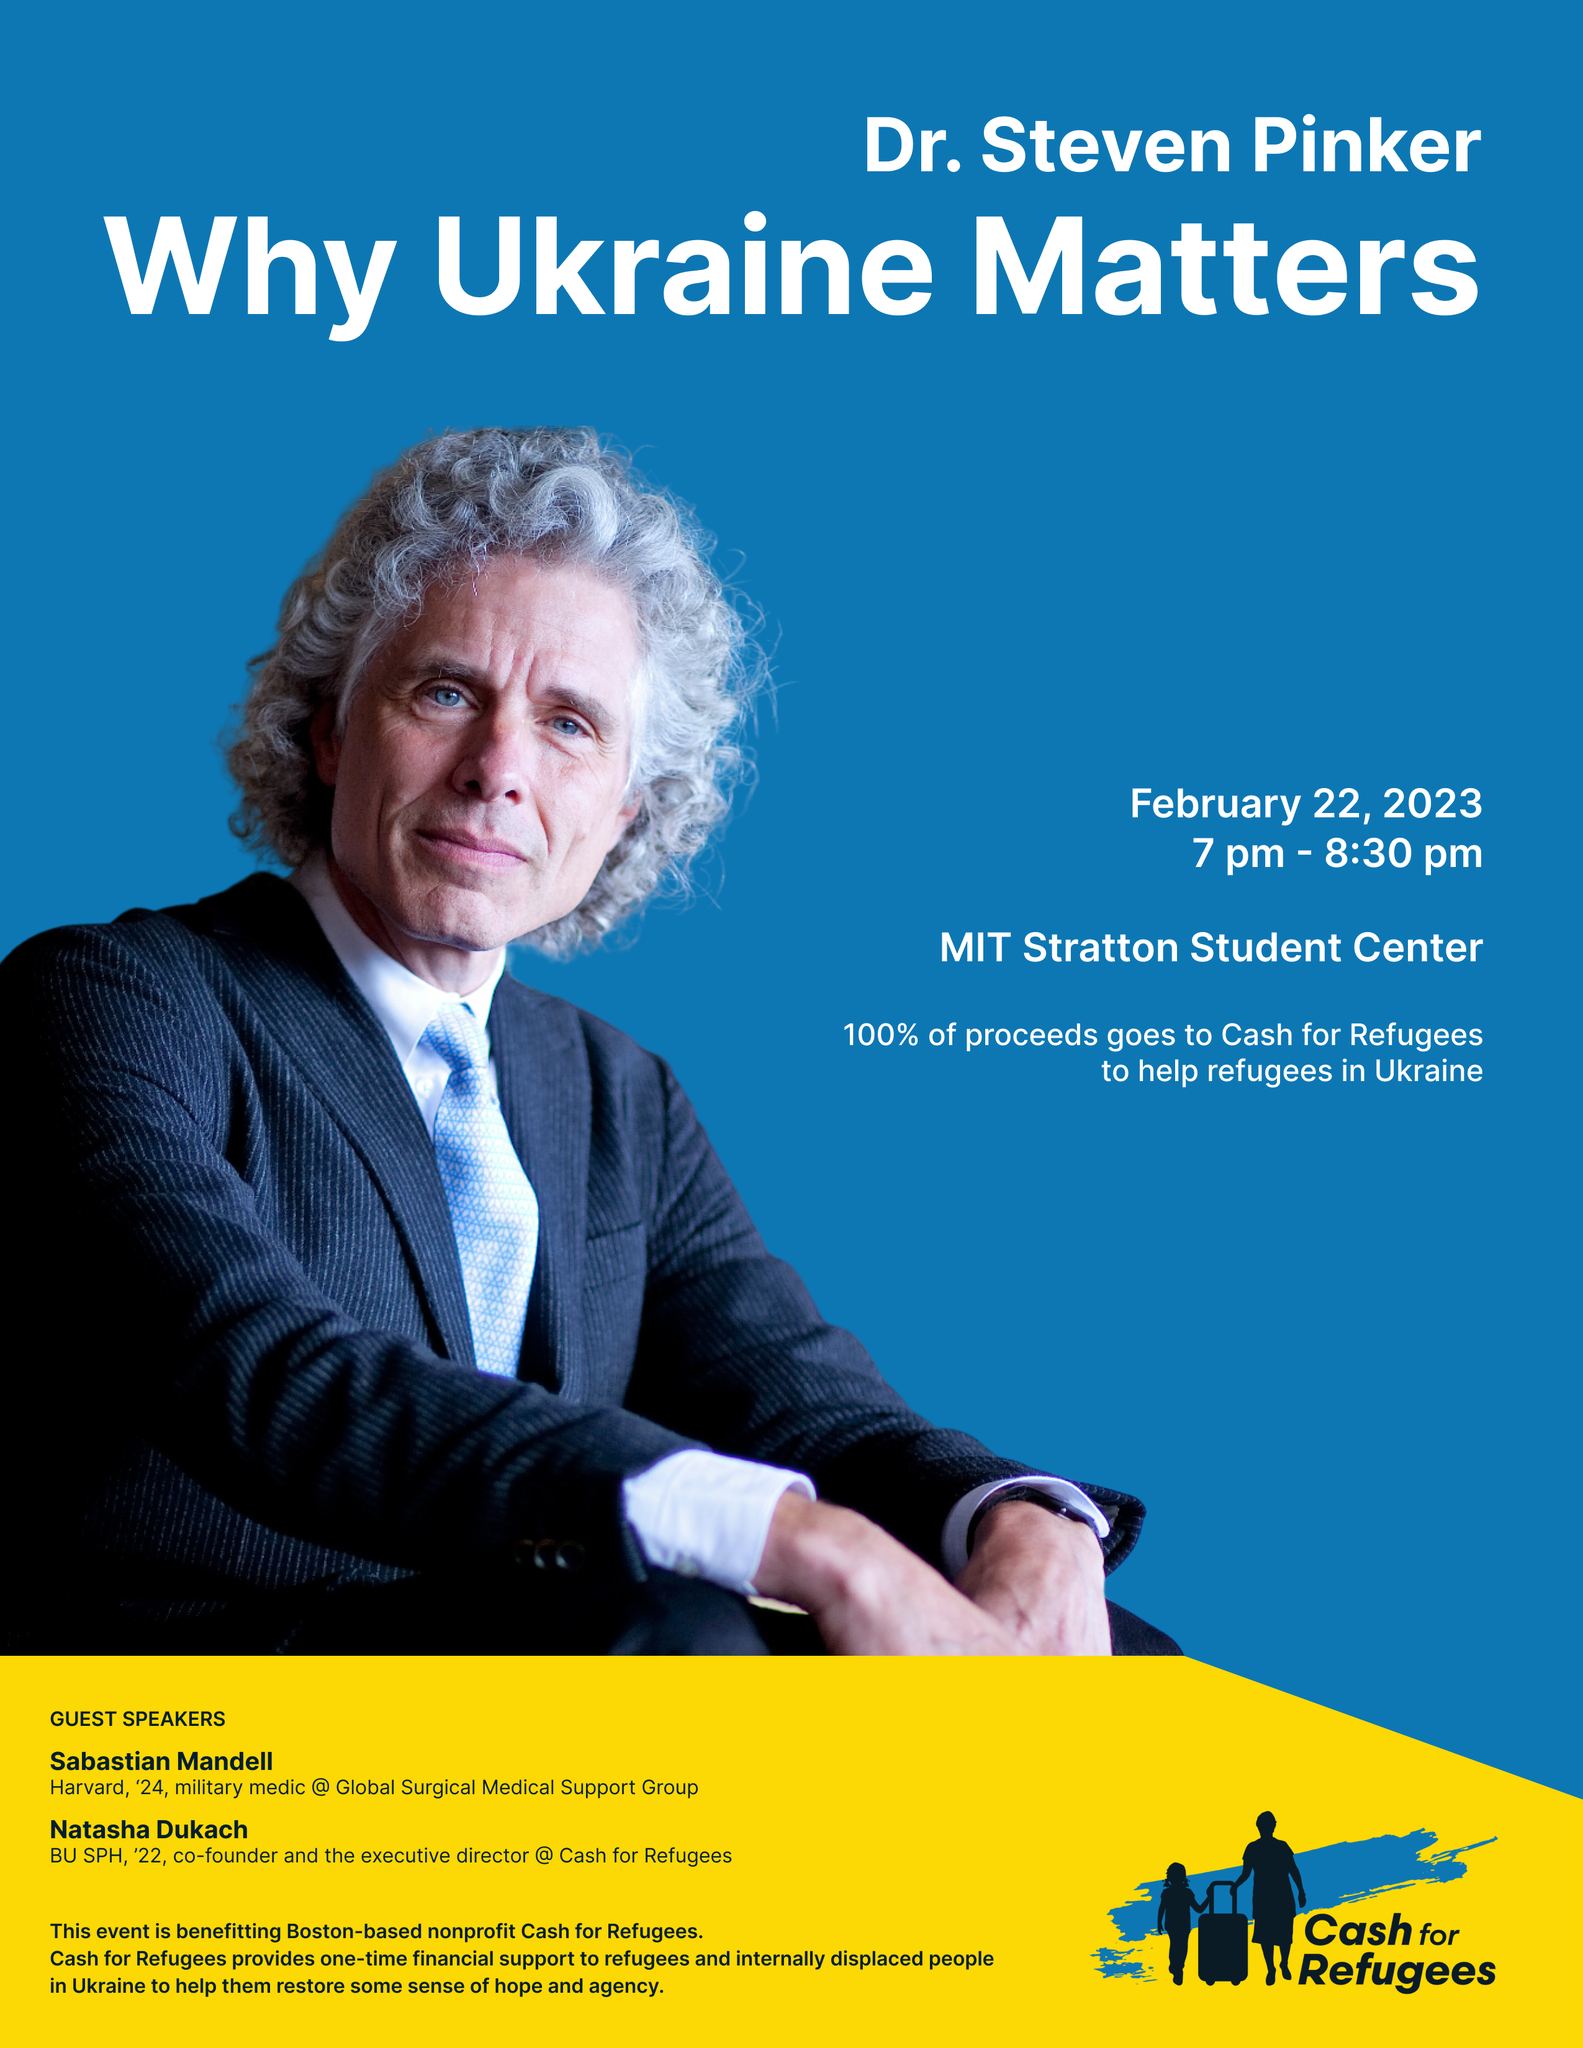 Dr. Steven Pinker: Why Ukraine Matters